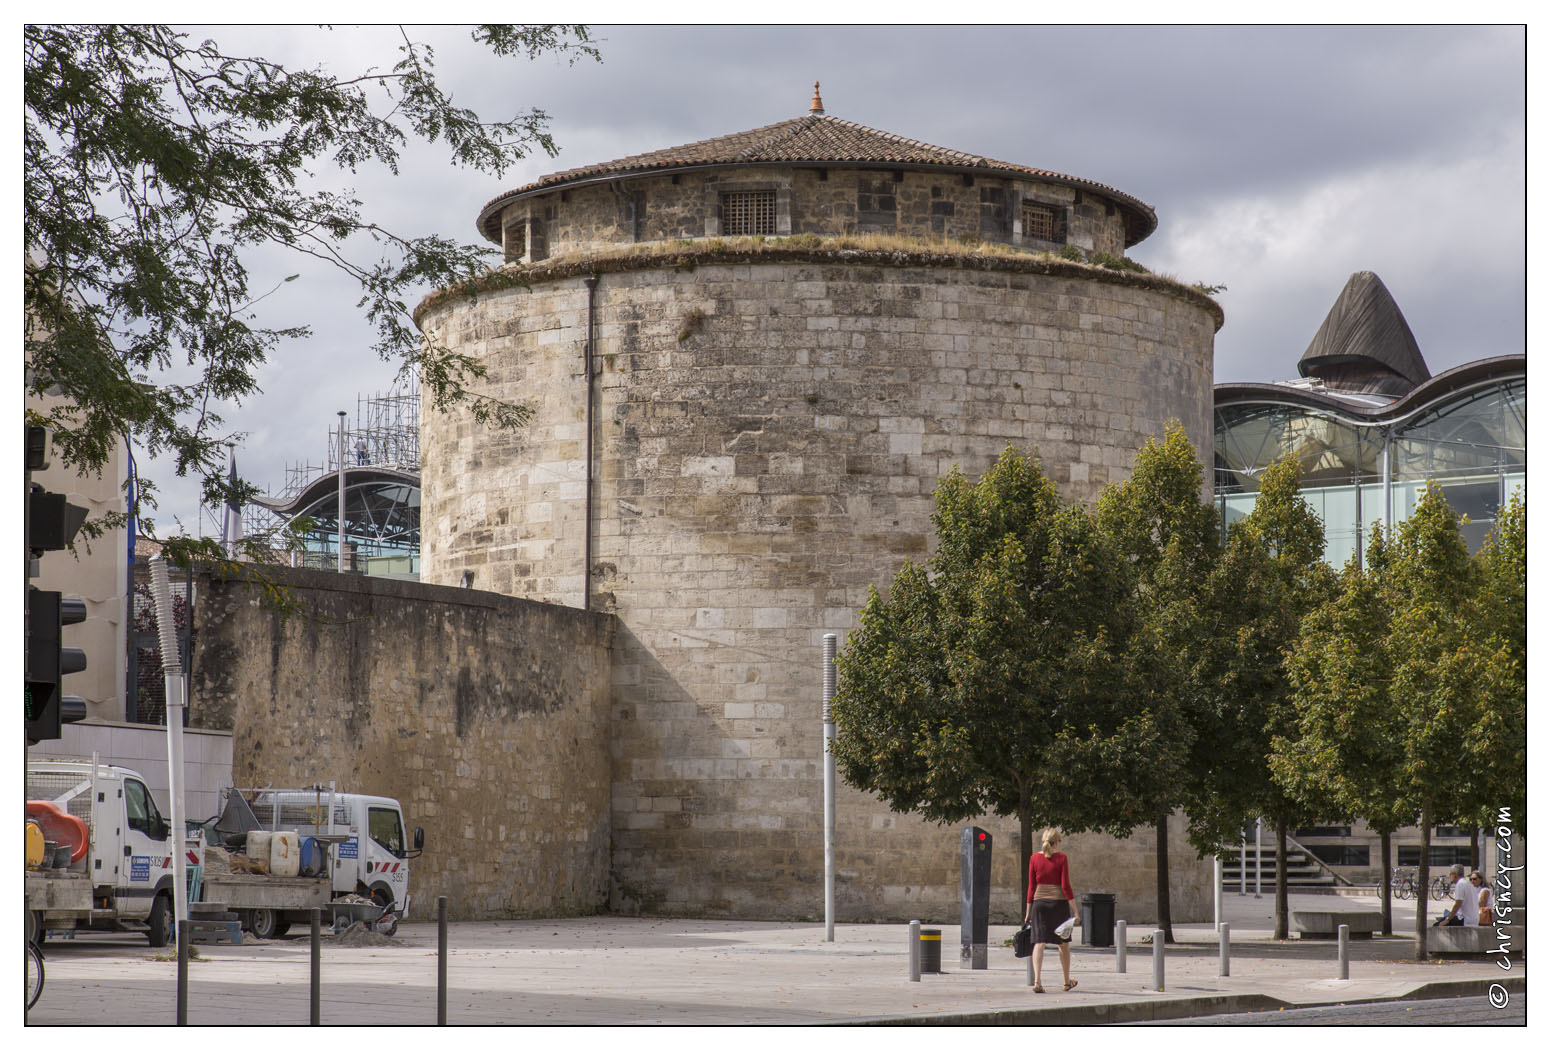 20140828-028_5712-Bordeaux_Tour_du_Fort_du_Ha.jpg